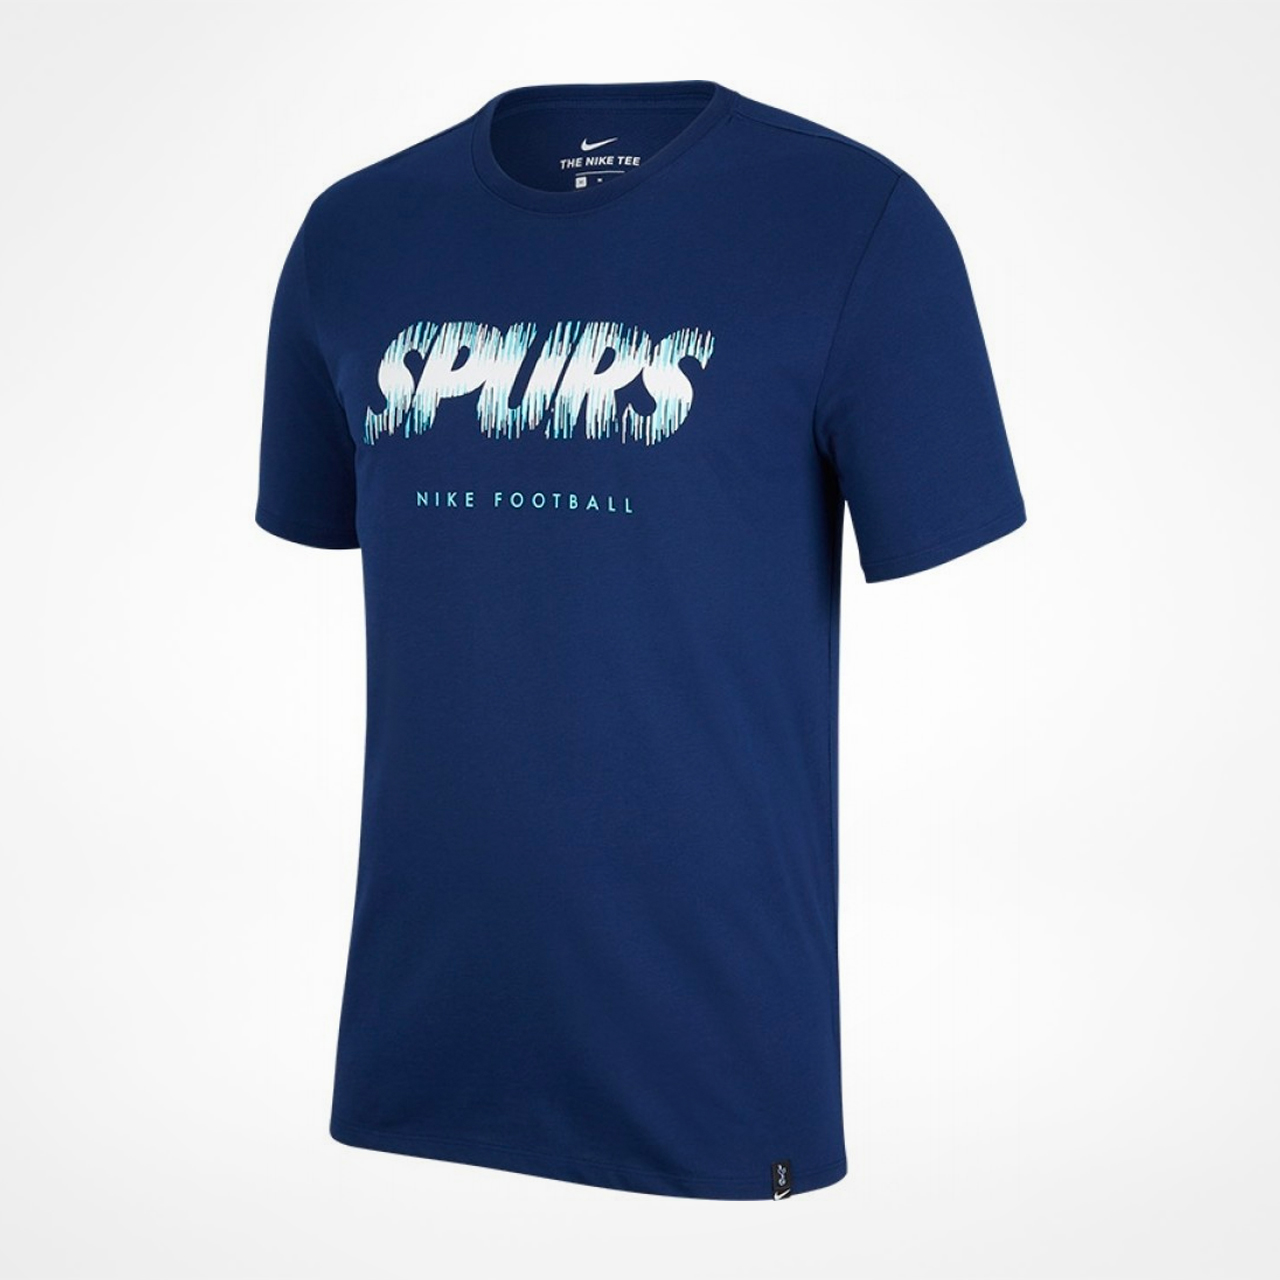 spurs shirt 2018